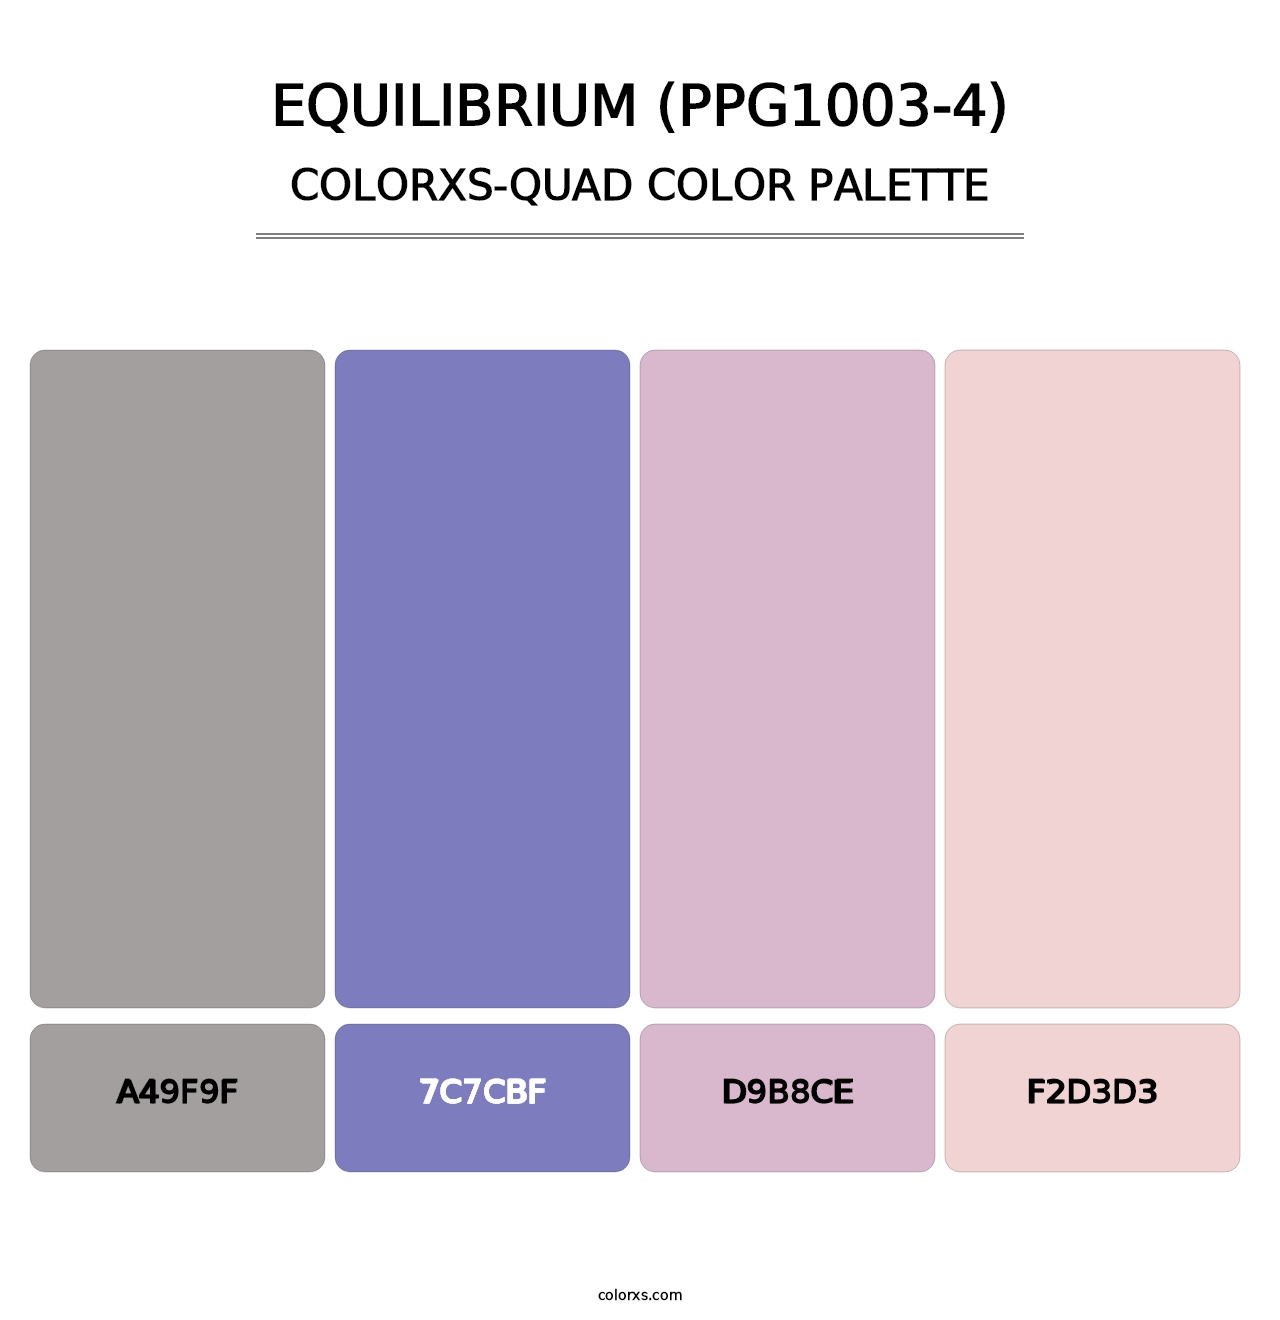 Equilibrium (PPG1003-4) - Colorxs Quad Palette